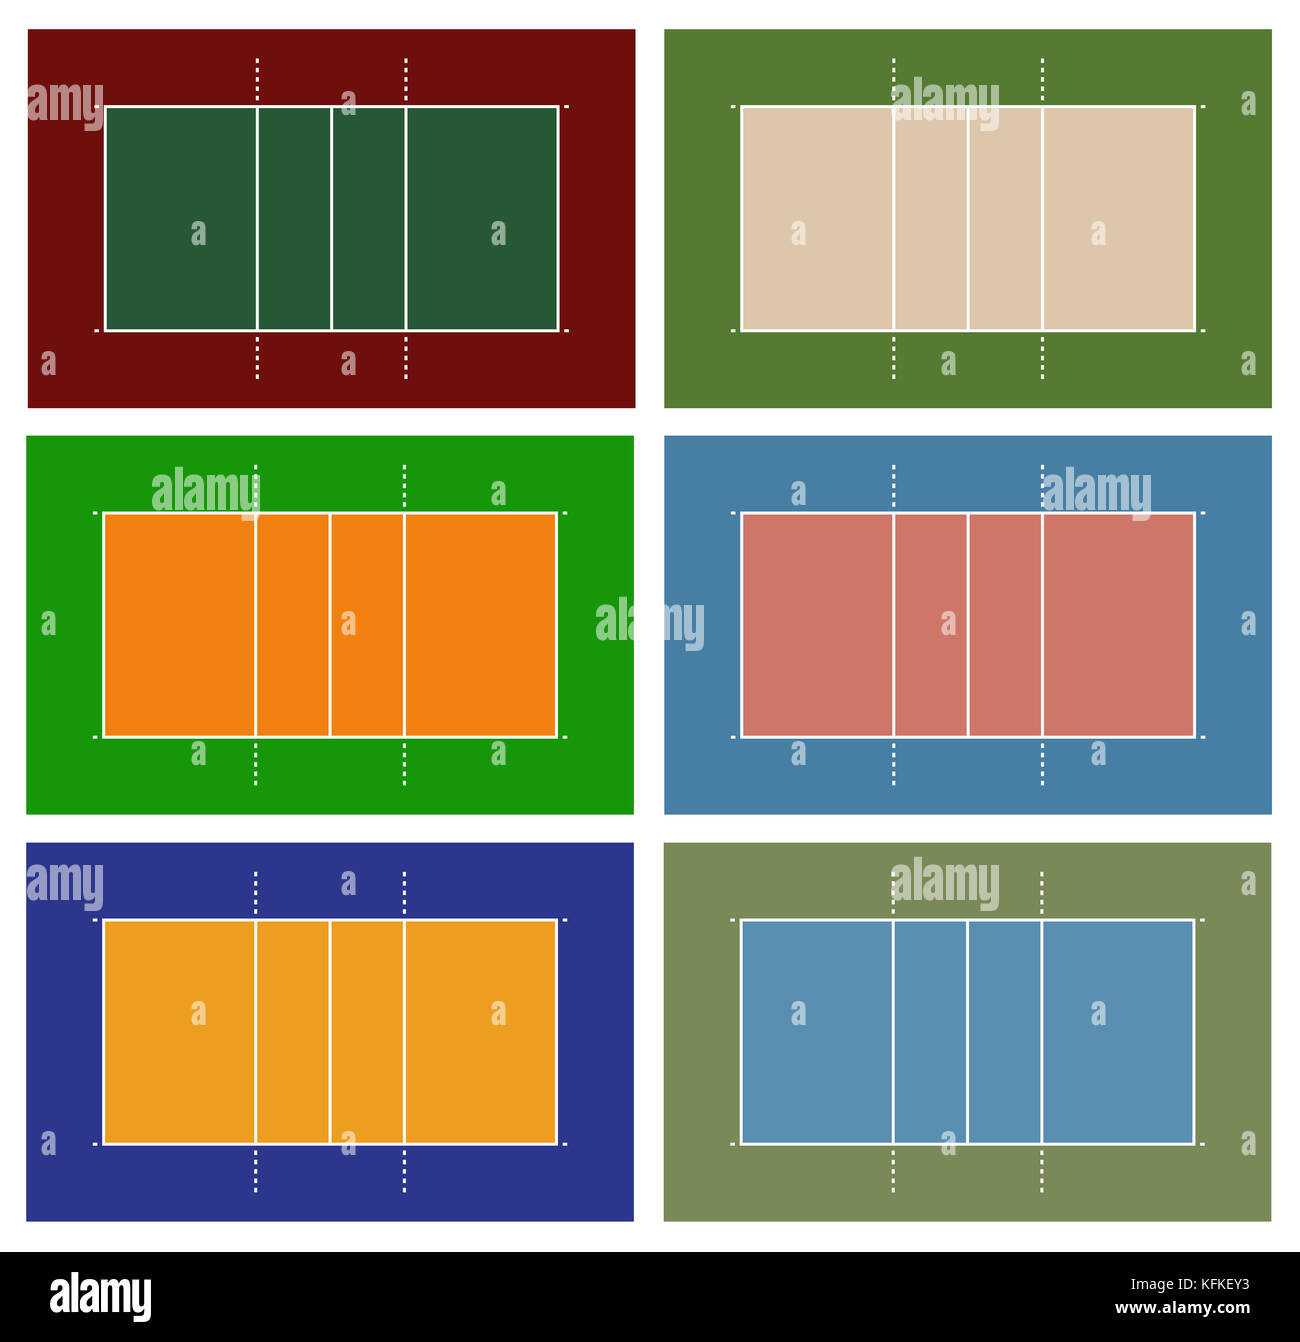 Volleyball Playbook Software: Screenshots